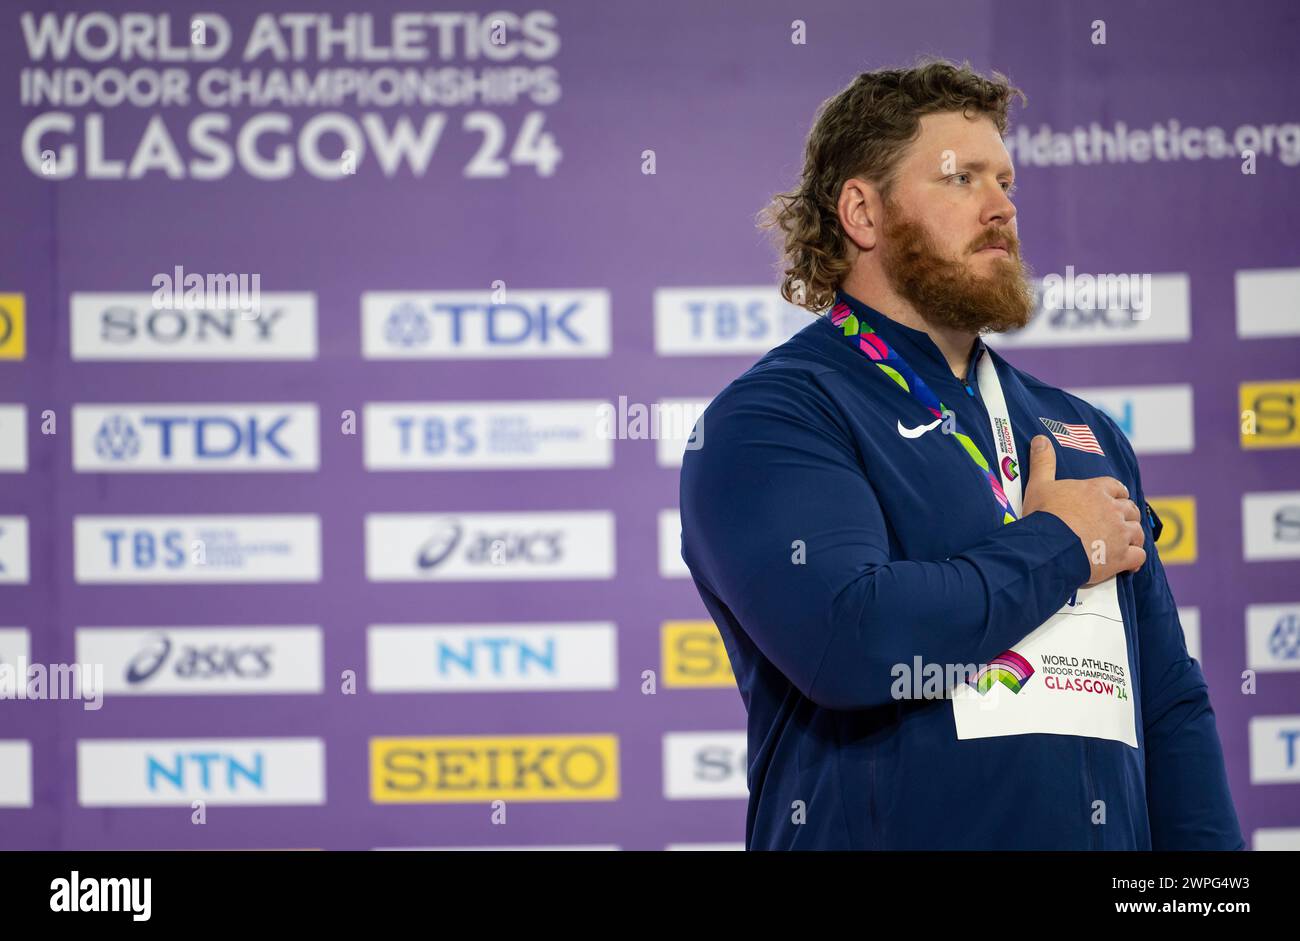 Ryan Crouser of the USA (Gold) Medaillenzeremonie im Männer-Kugelstoßen bei den Leichtathletik-Hallenweltmeisterschaften in der Emirates Arena, Glasgow, Schottland, Großbritannien. Stockfoto